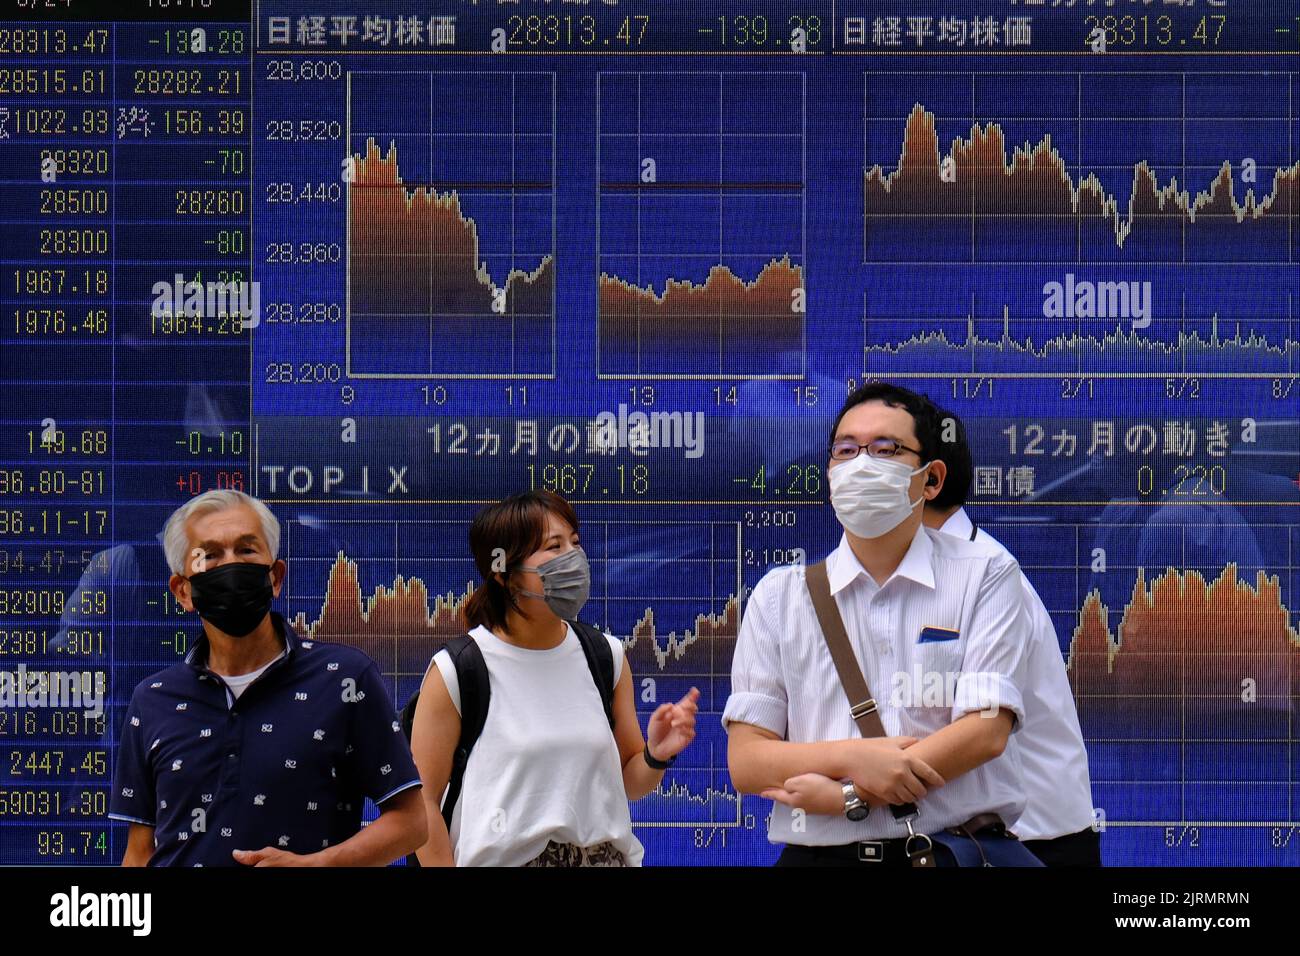 Le persone che indossano maschere si trovano davanti a una scheda elettronica che visualizza gli indici azionari di vari paesi, tra cui l'indice RTS (Russian Trading System), che è vuoto, al di fuori di un intermediazione a Tokyo. Foto Stock